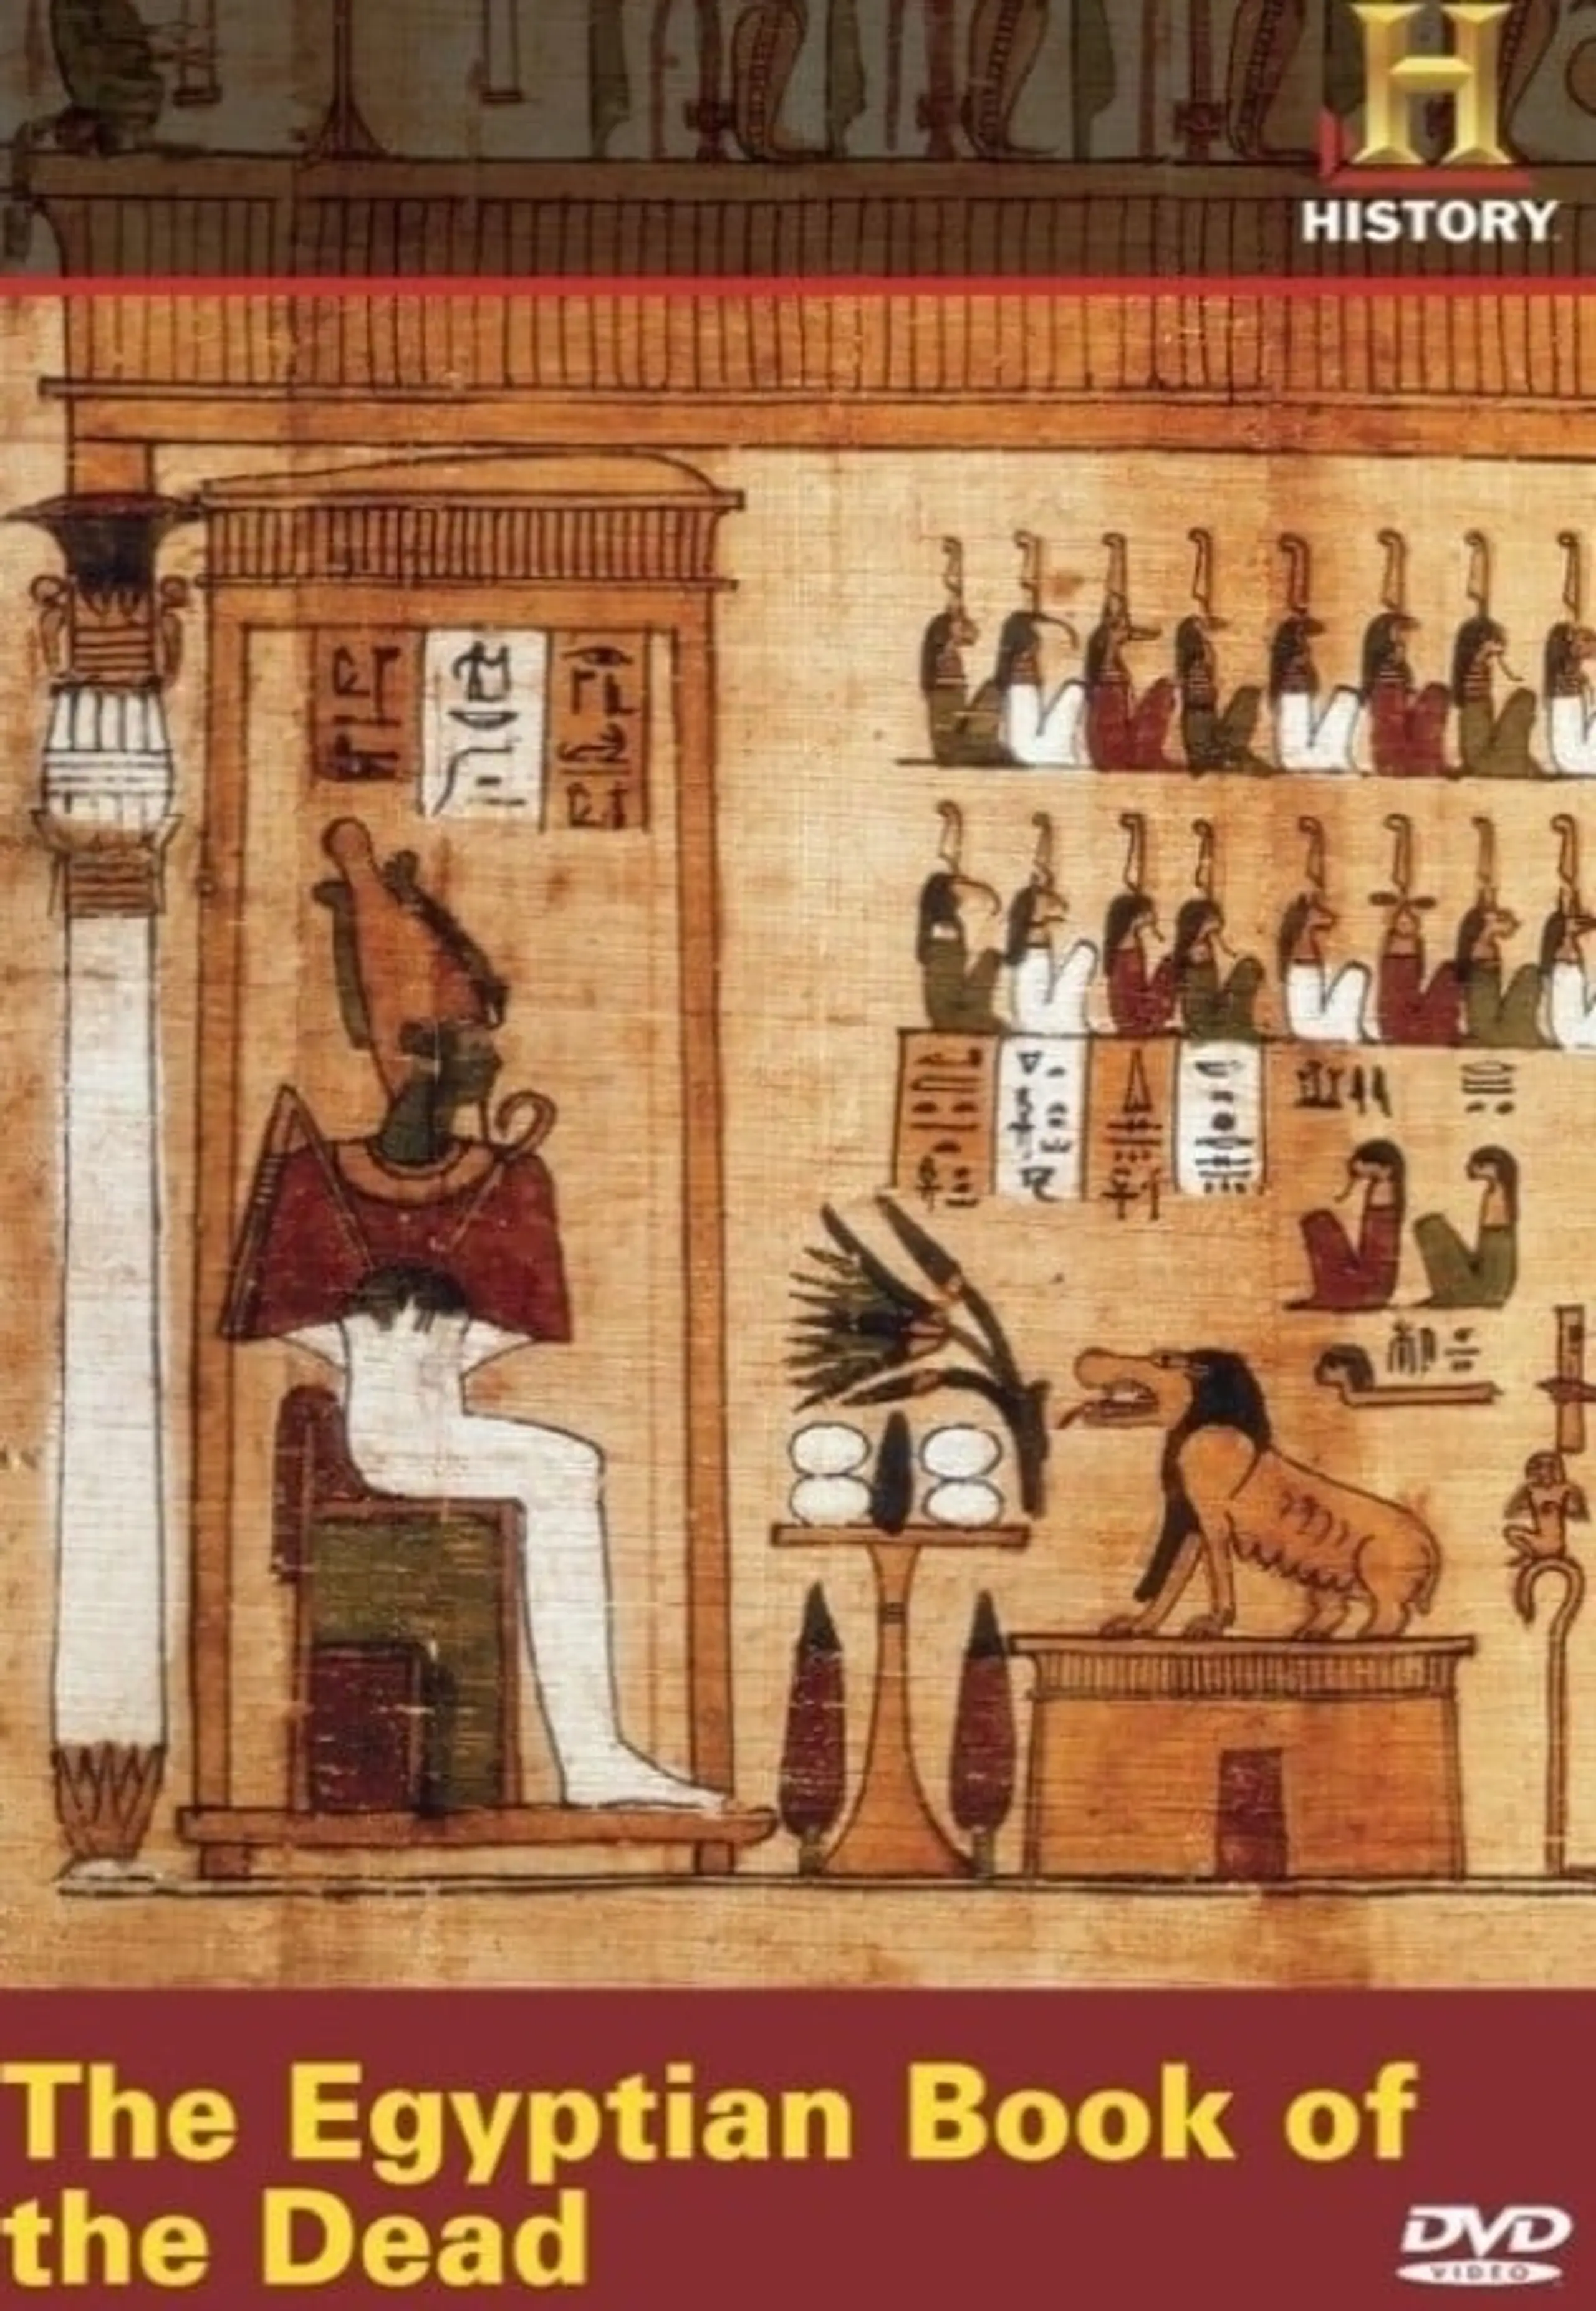 Das Totenbuch der alten Ägypter